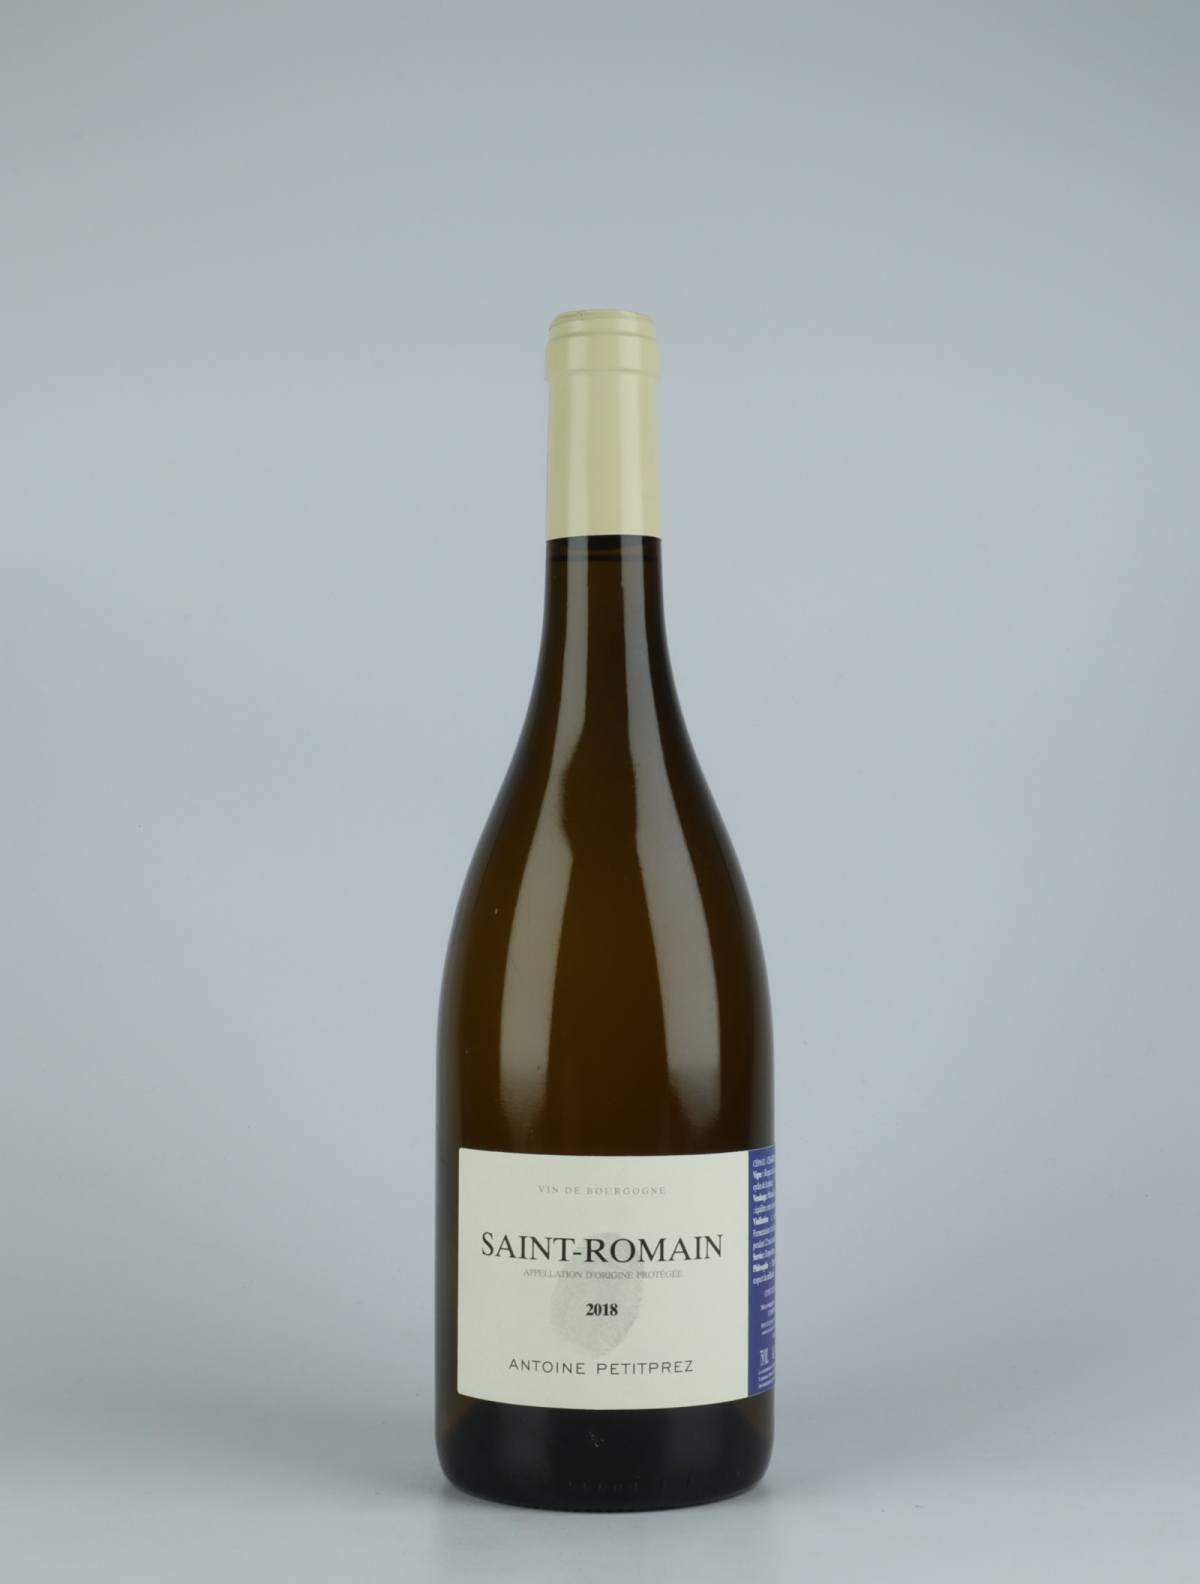 A bottle 2018 Saint Romain Blanc White wine from Antoine Petitprez, Burgundy in France